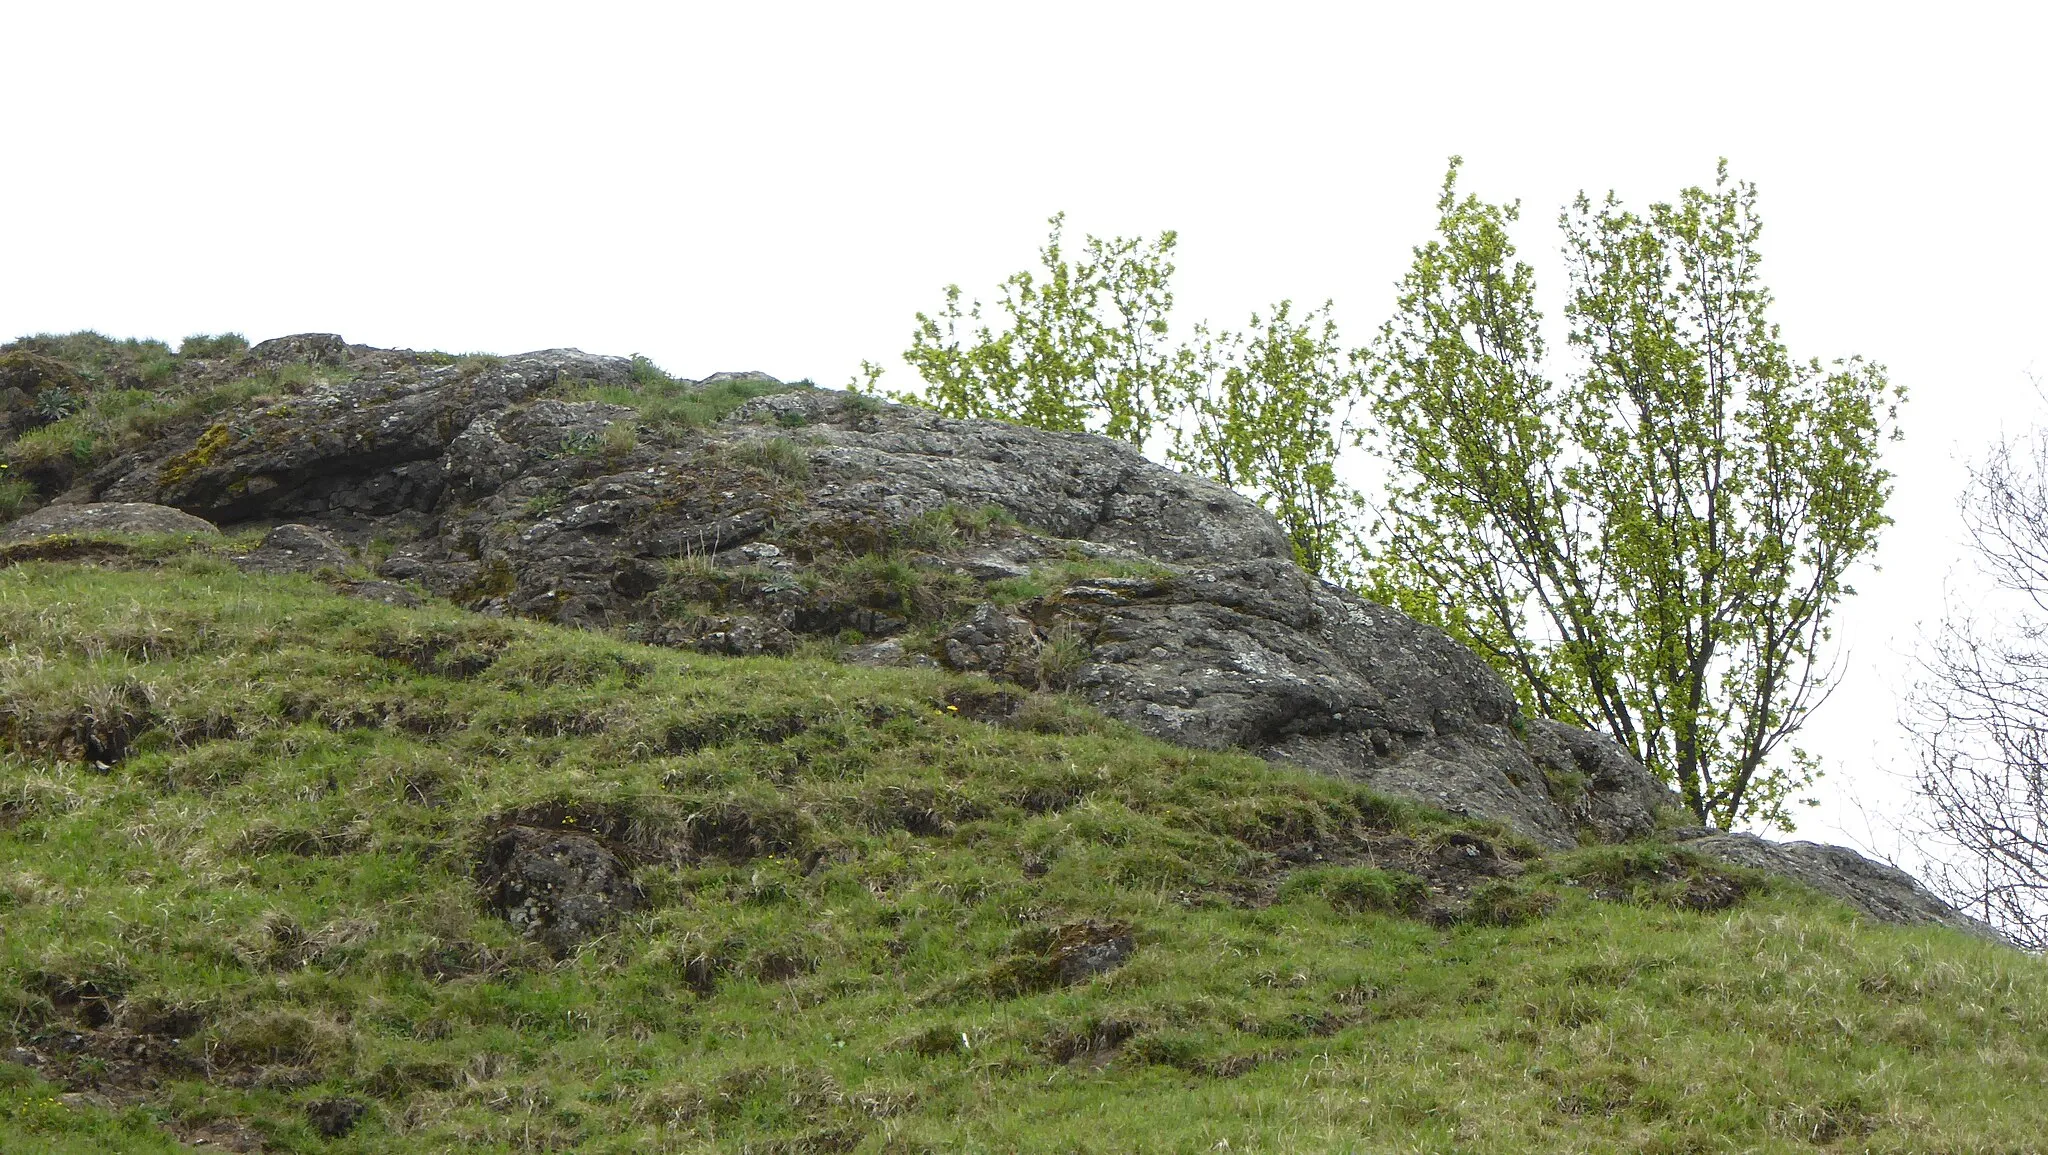 Photo showing: Der Calver Bühl ist als ehemaliger Vulkanschlot ein 1,1 ha großes Geotop und Naturdenkmal bei Dettingen an der Erms. 
Der ca. 100 m im Querschnitt messende Hügel mit einer Linde auf dem Top ragt als Härtling aus den umgebenden weicheren Schichtendes obersten Mitteljura. Der Tuff enthält zahlreiche Lapilli aus olivinmelilithischem Gestein in einer karbonatischenGrundmasse. Die gipfelnahen entblößten Tuffbereiche weisen eine ausgeprägte Blitzschlagmagnetisierung auf.